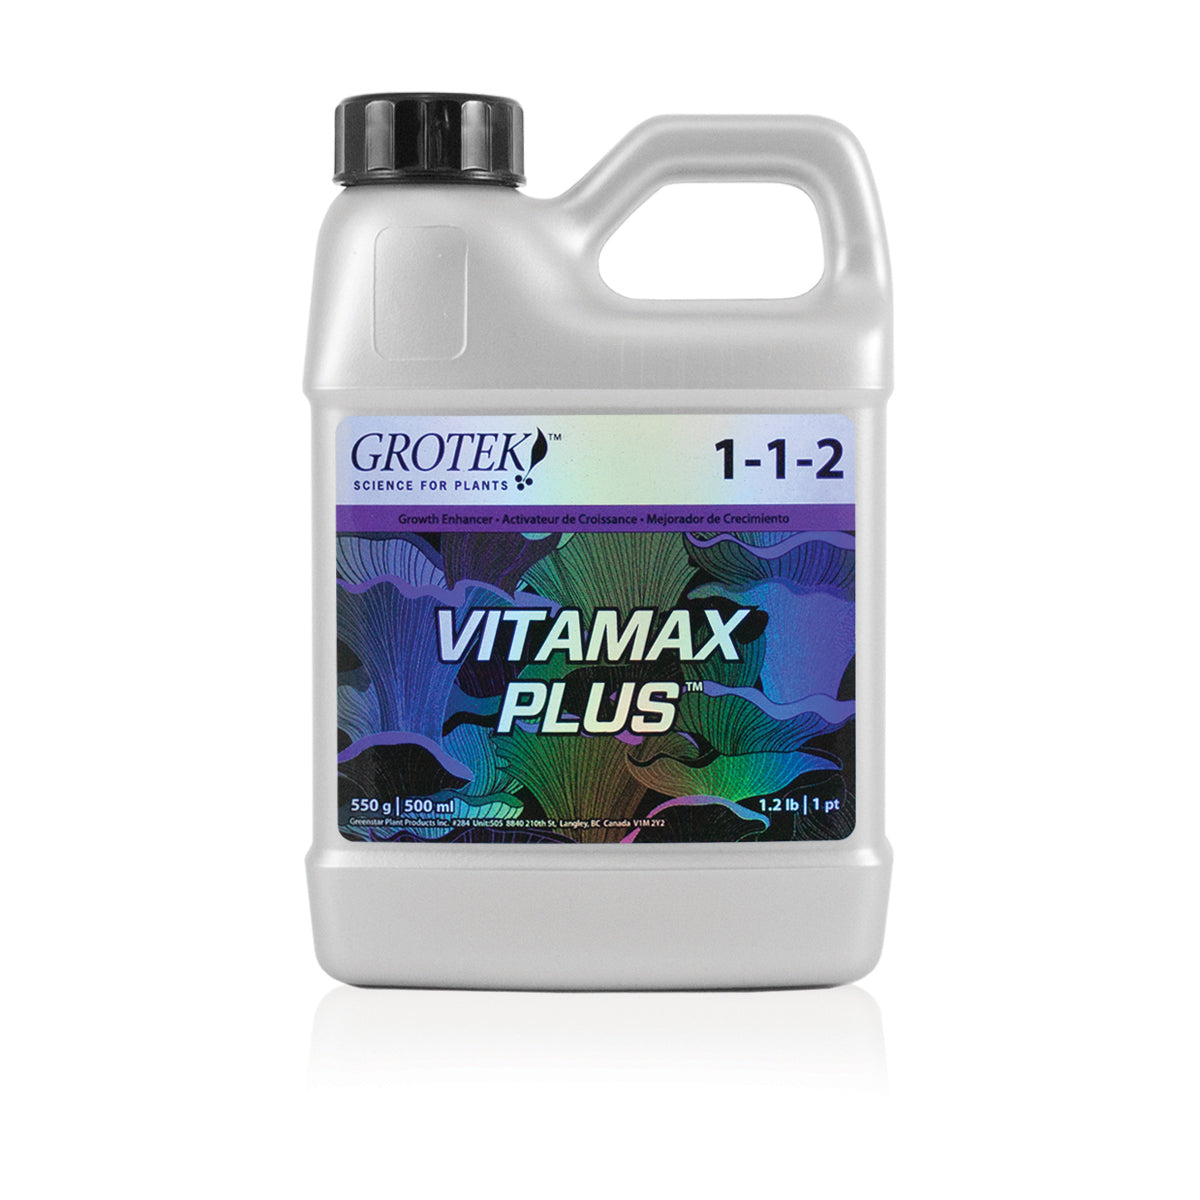 Product Image:Grotek Vitamax Plus 1-1-2